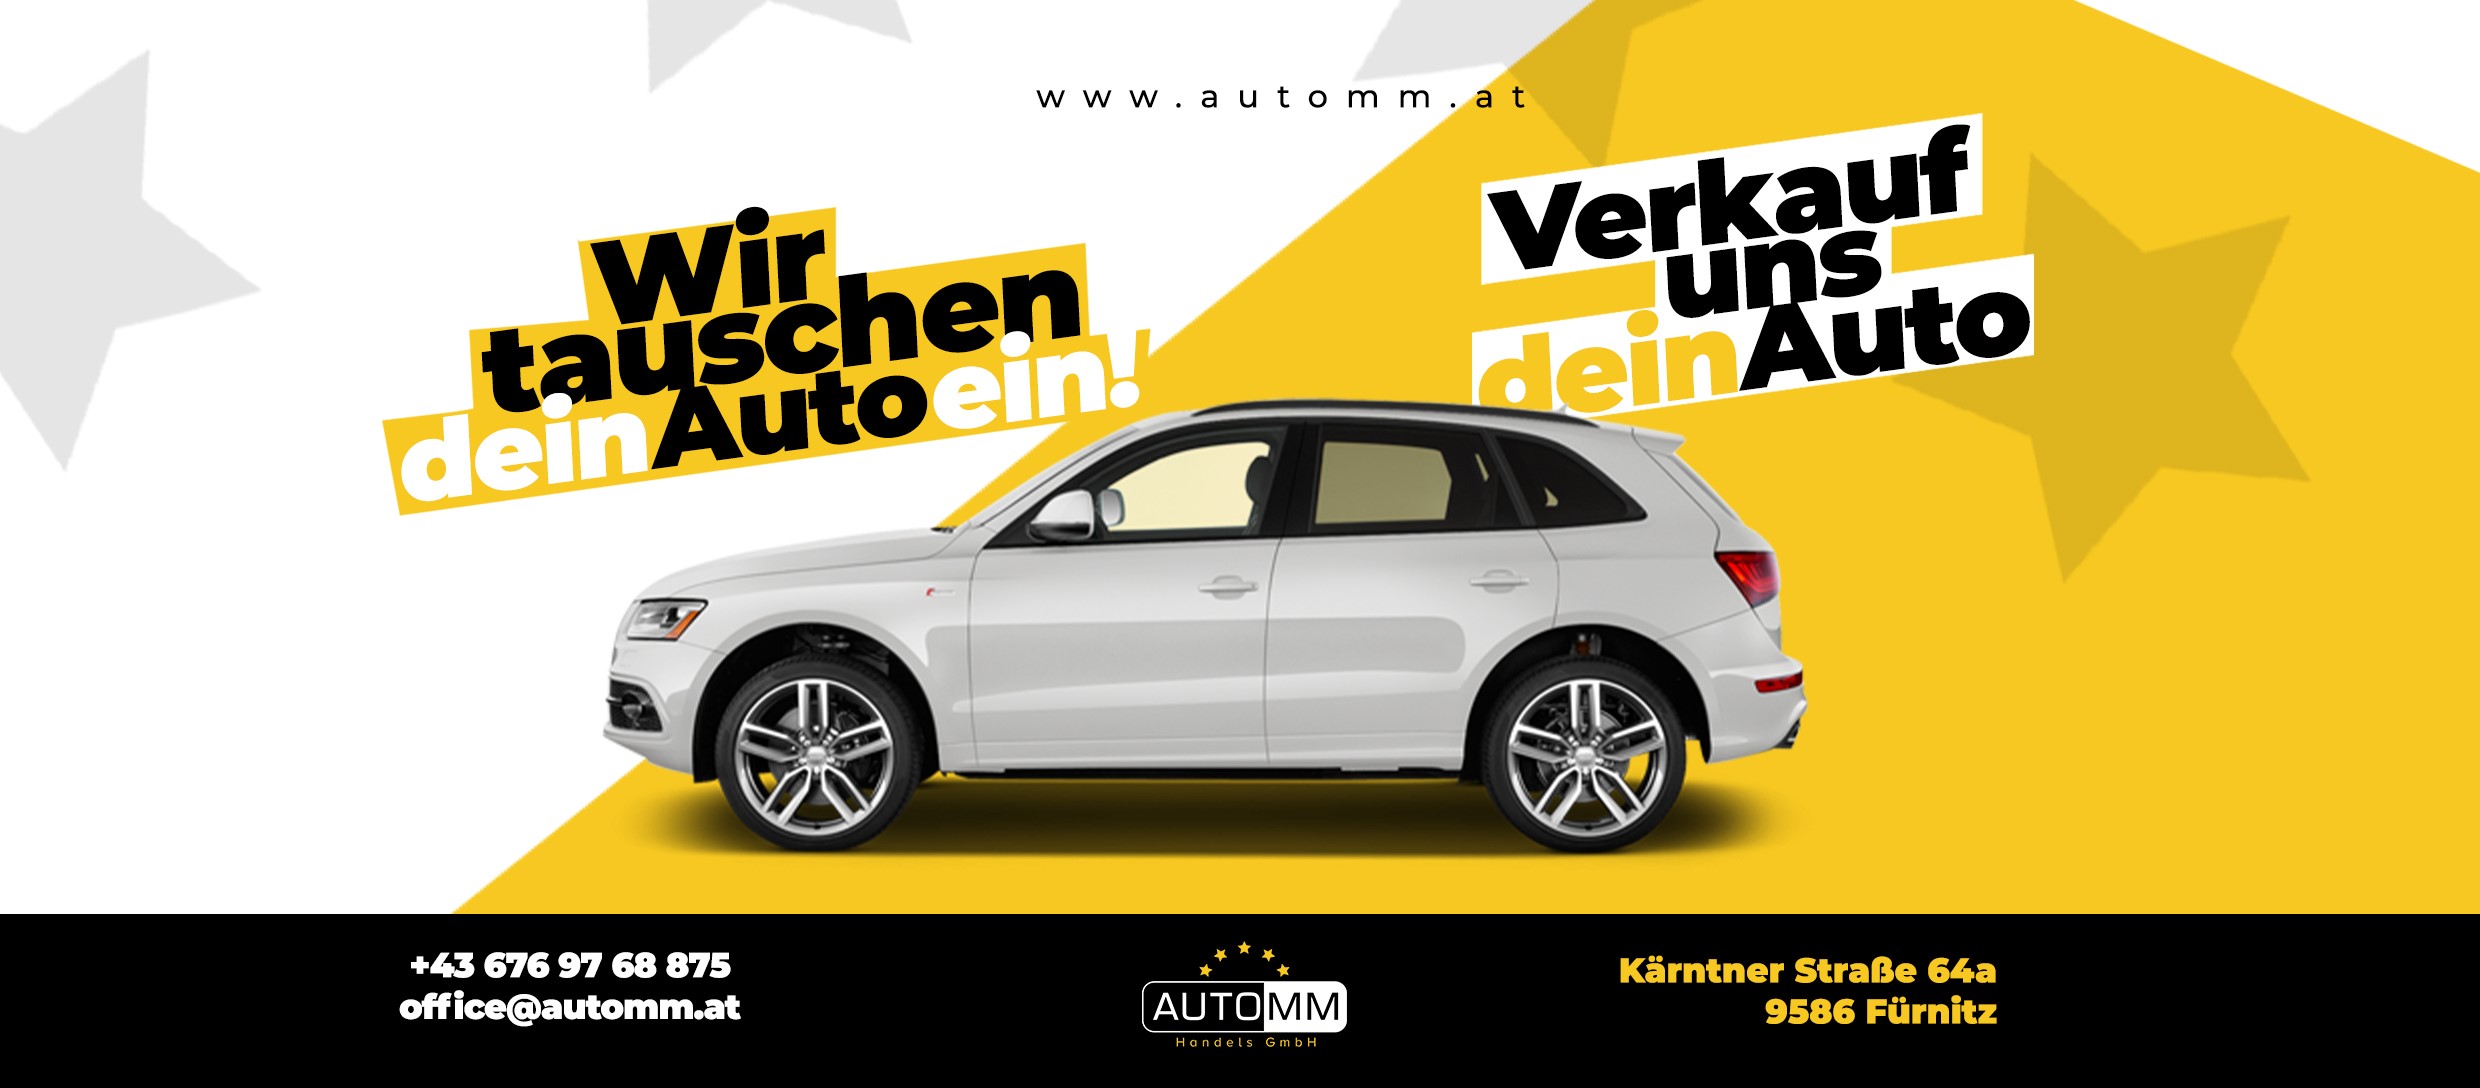 Wir tauschen dein Auto ein! Verkauf uns dein Auto! © Auto MM GmbH